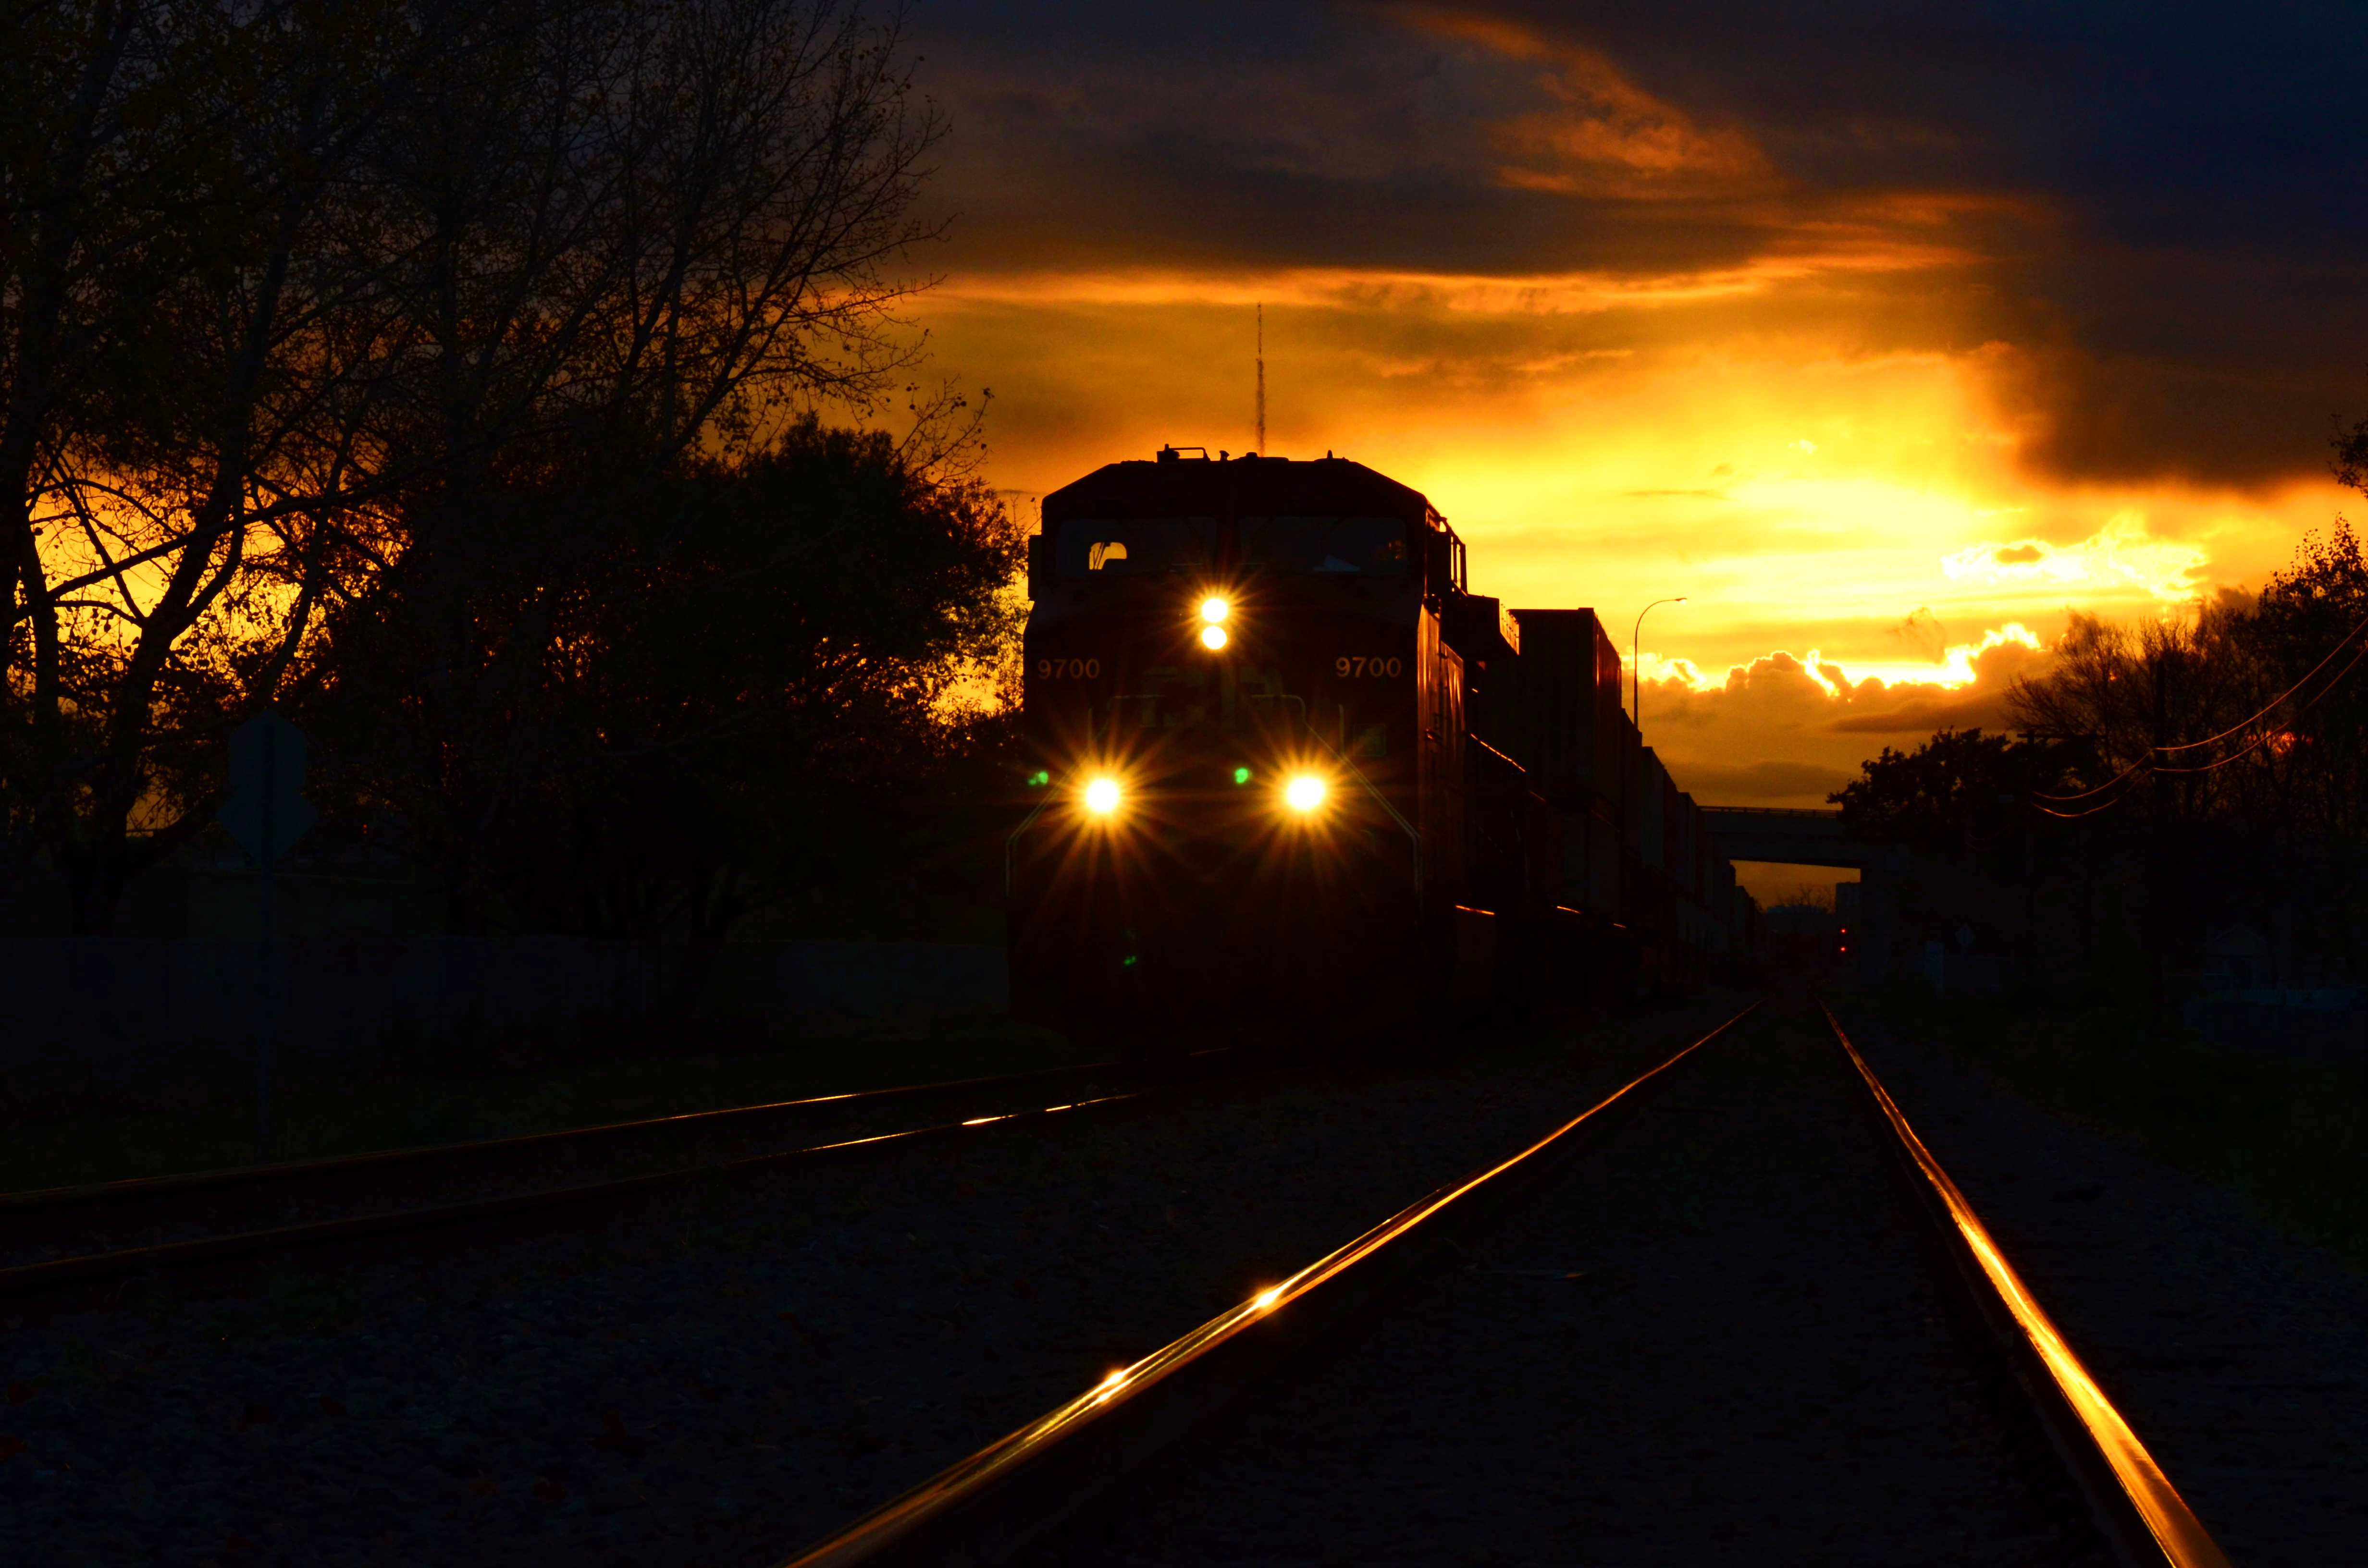 Night train photo